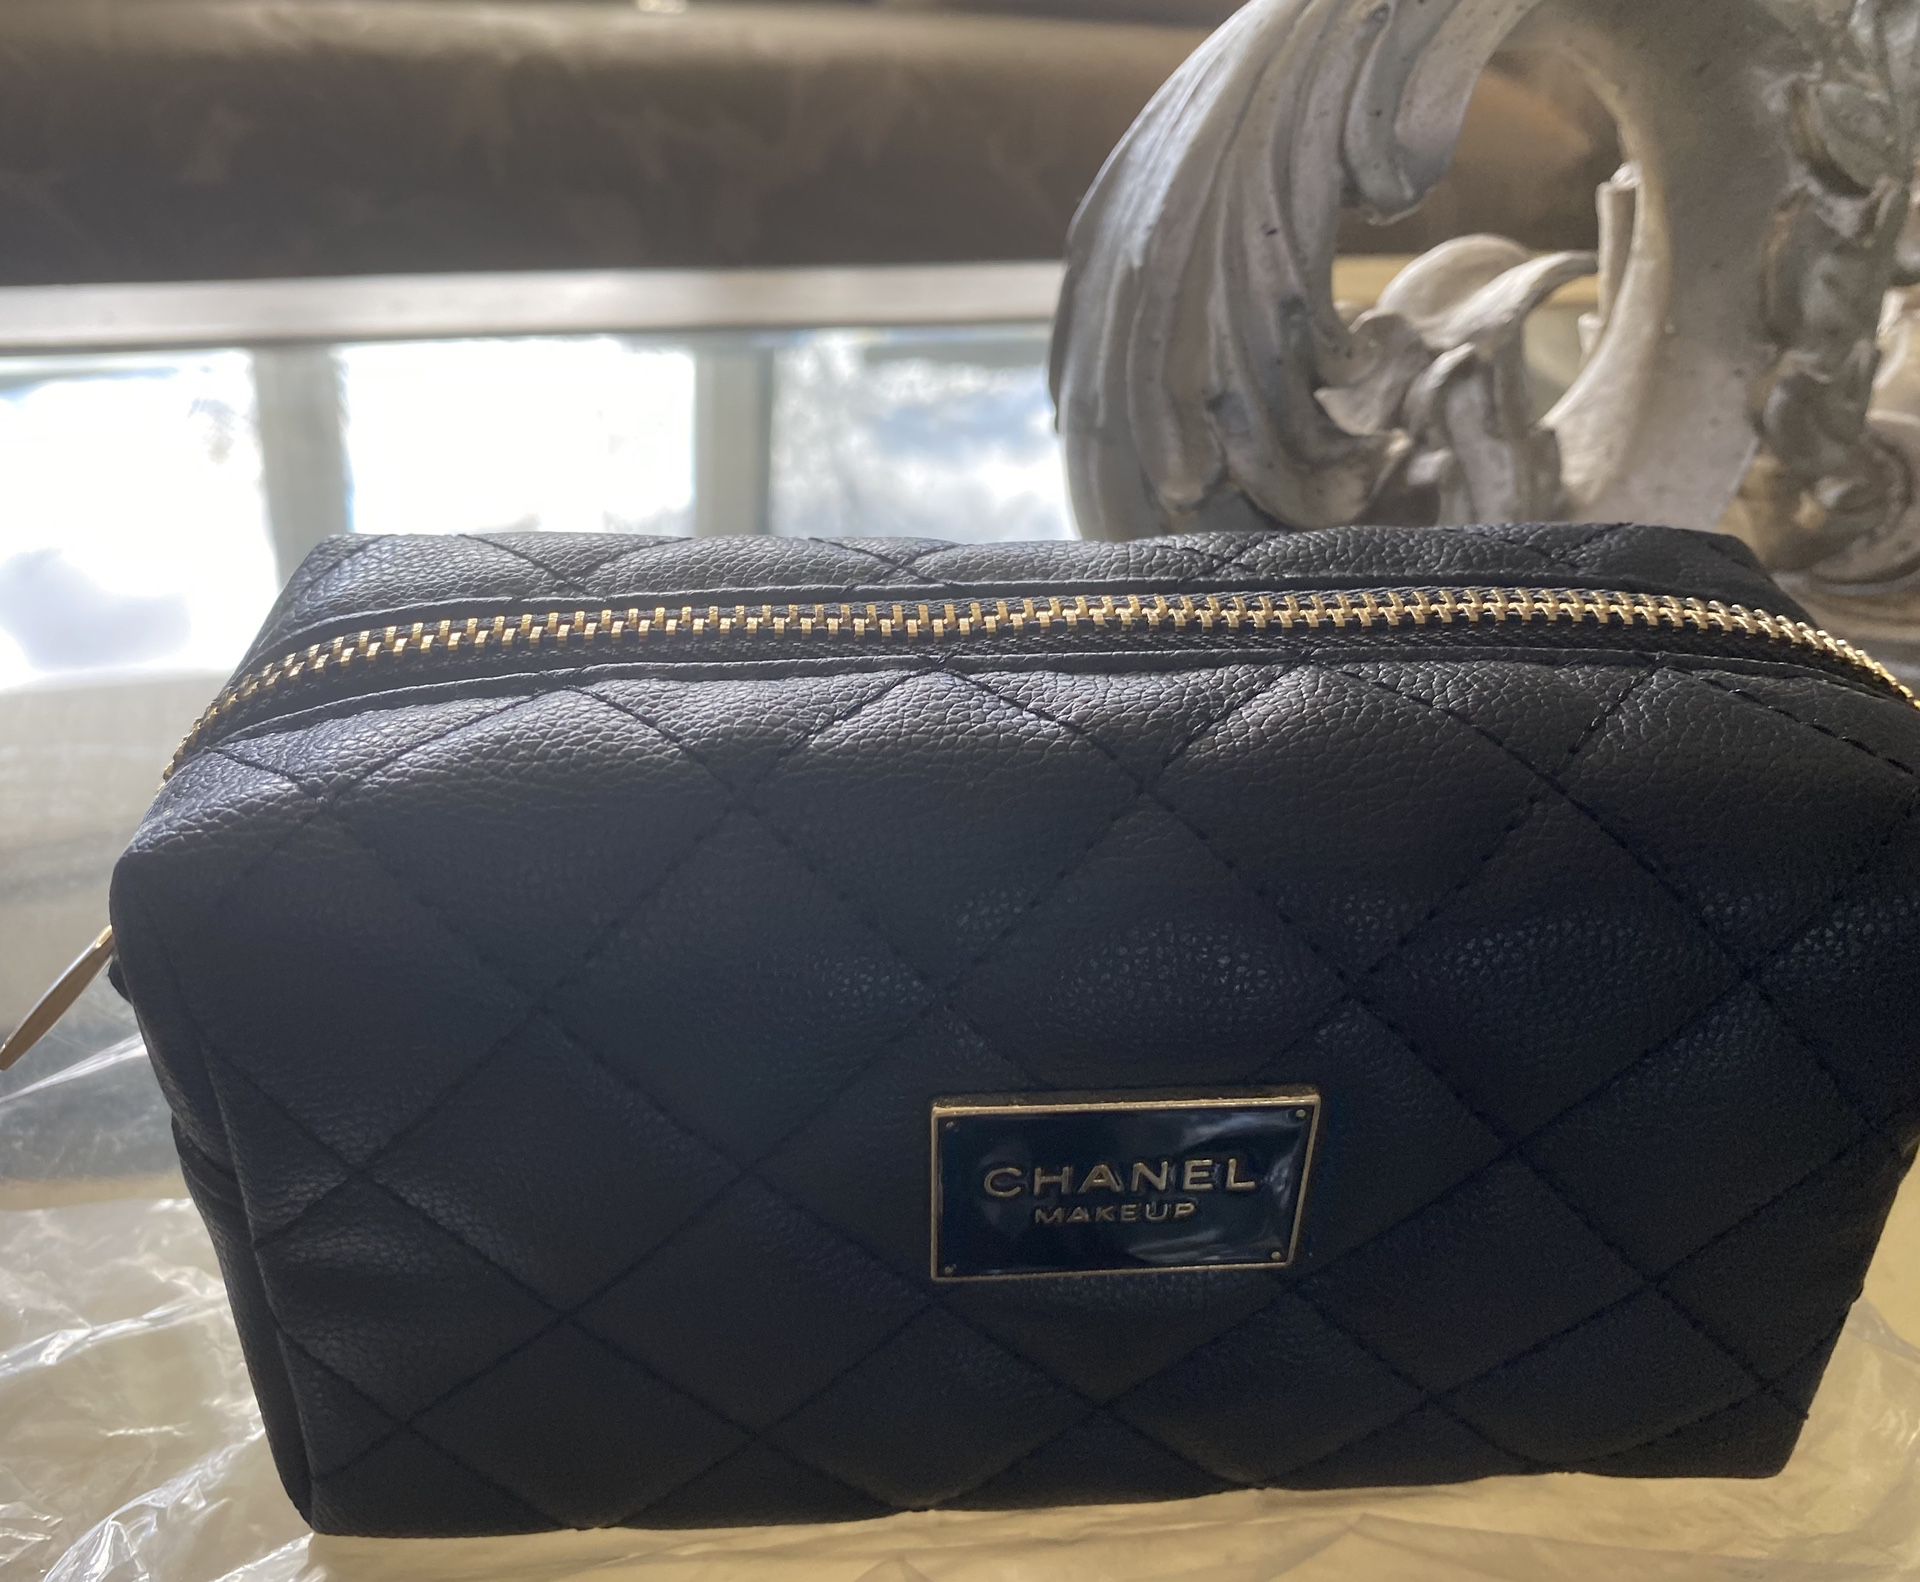 Chanel makeup bag 